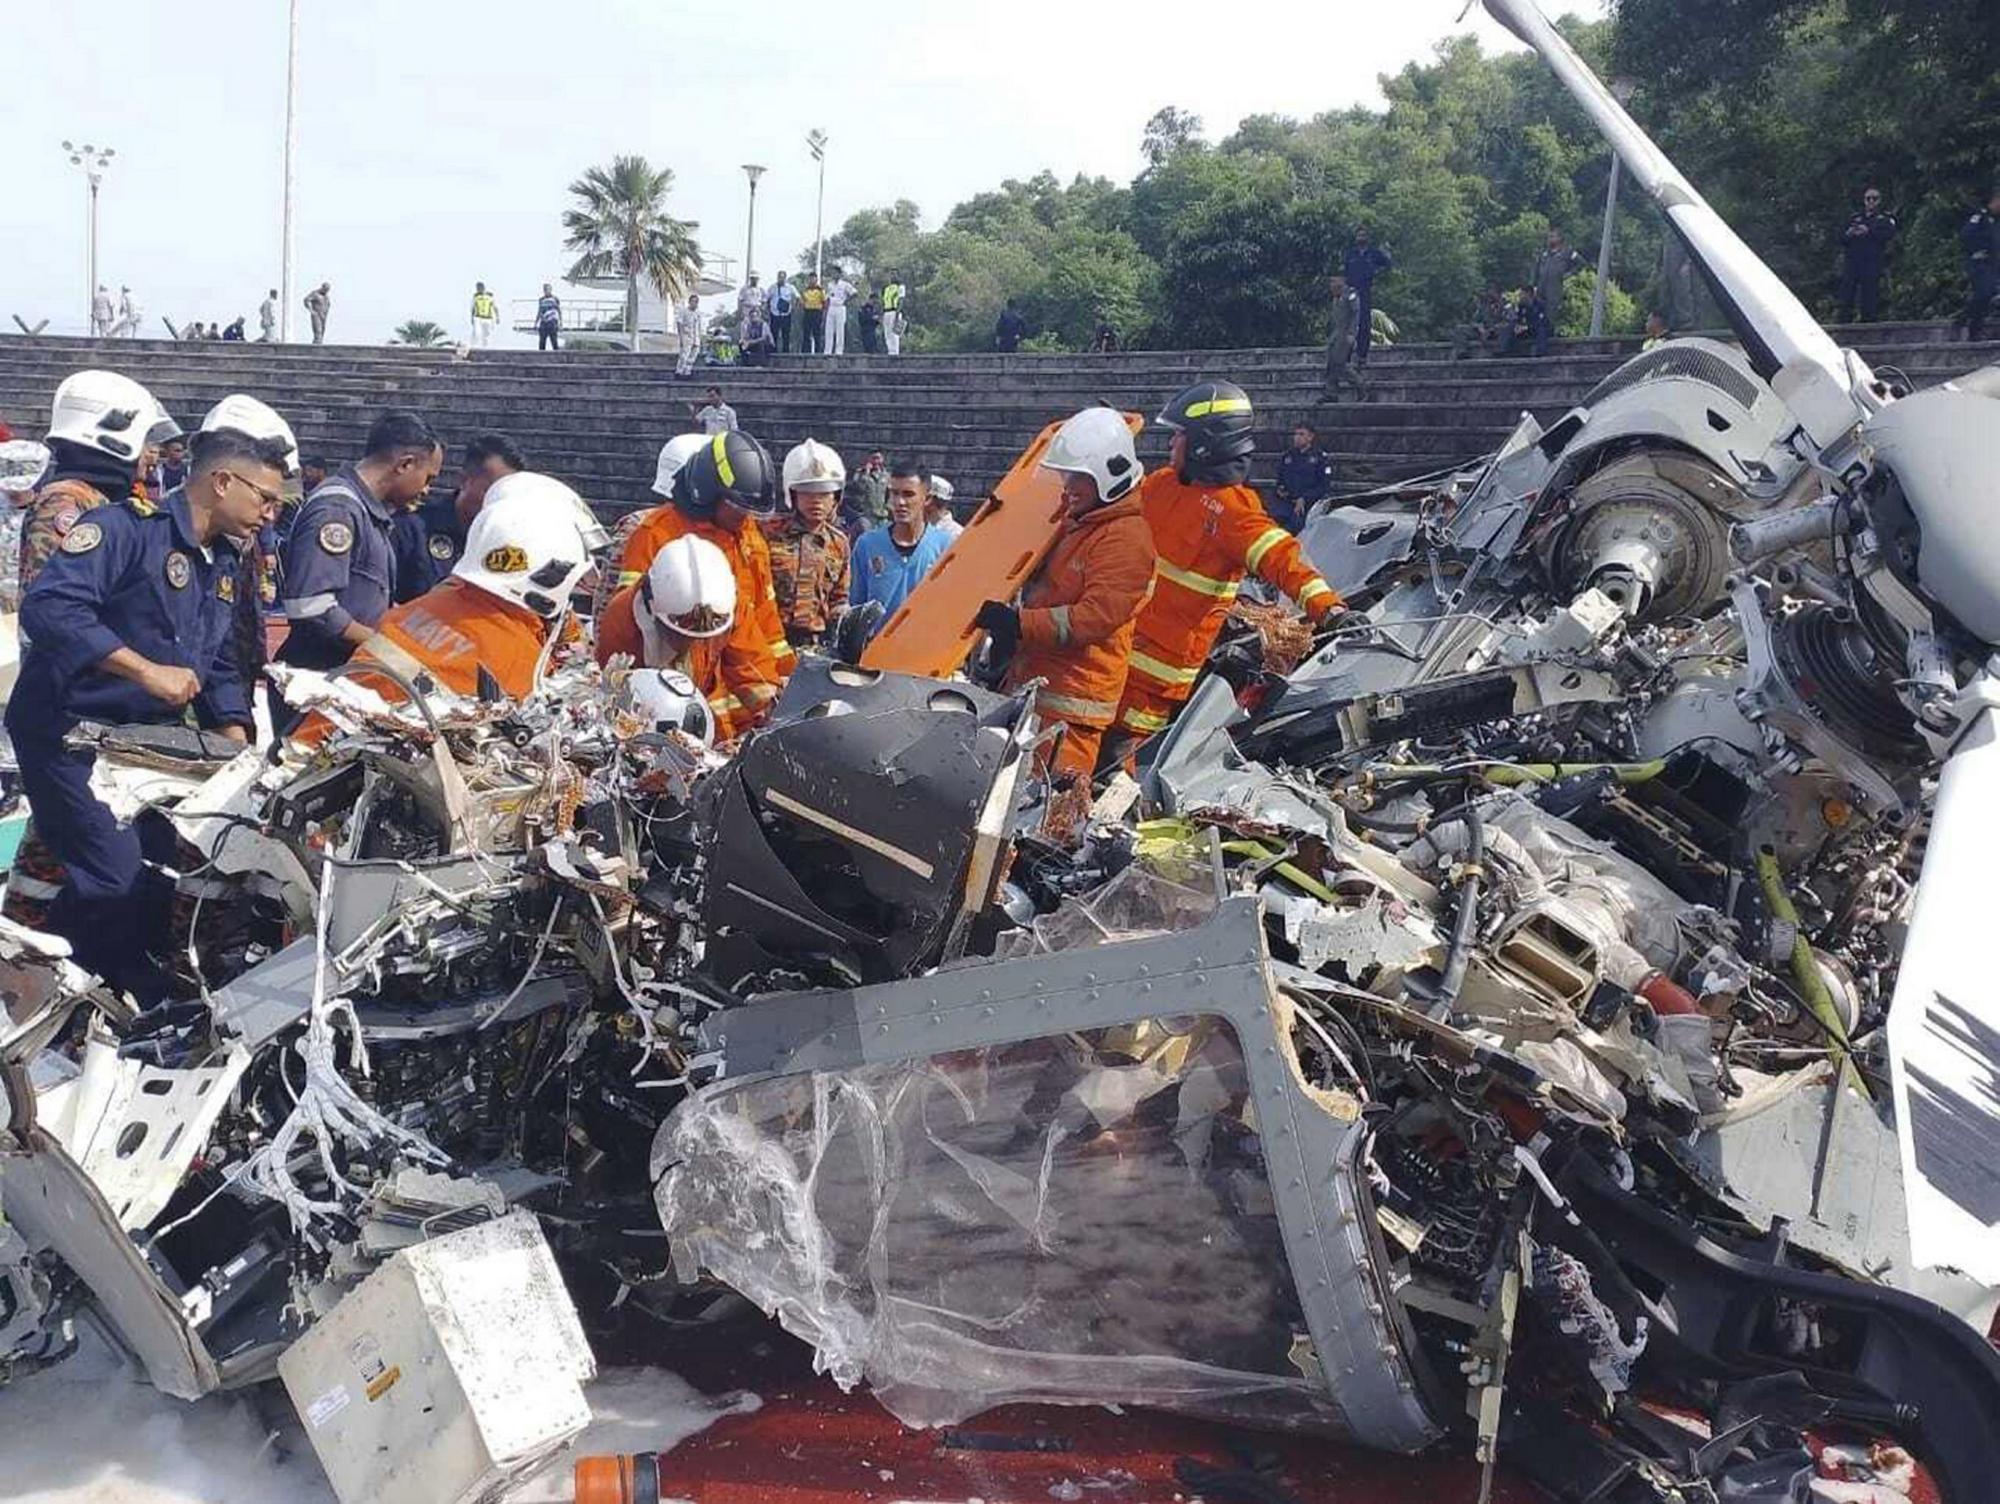 Pri zrážke dvoch malajzijských vojenských vrtuľníkov zomrelo desať ľudí.